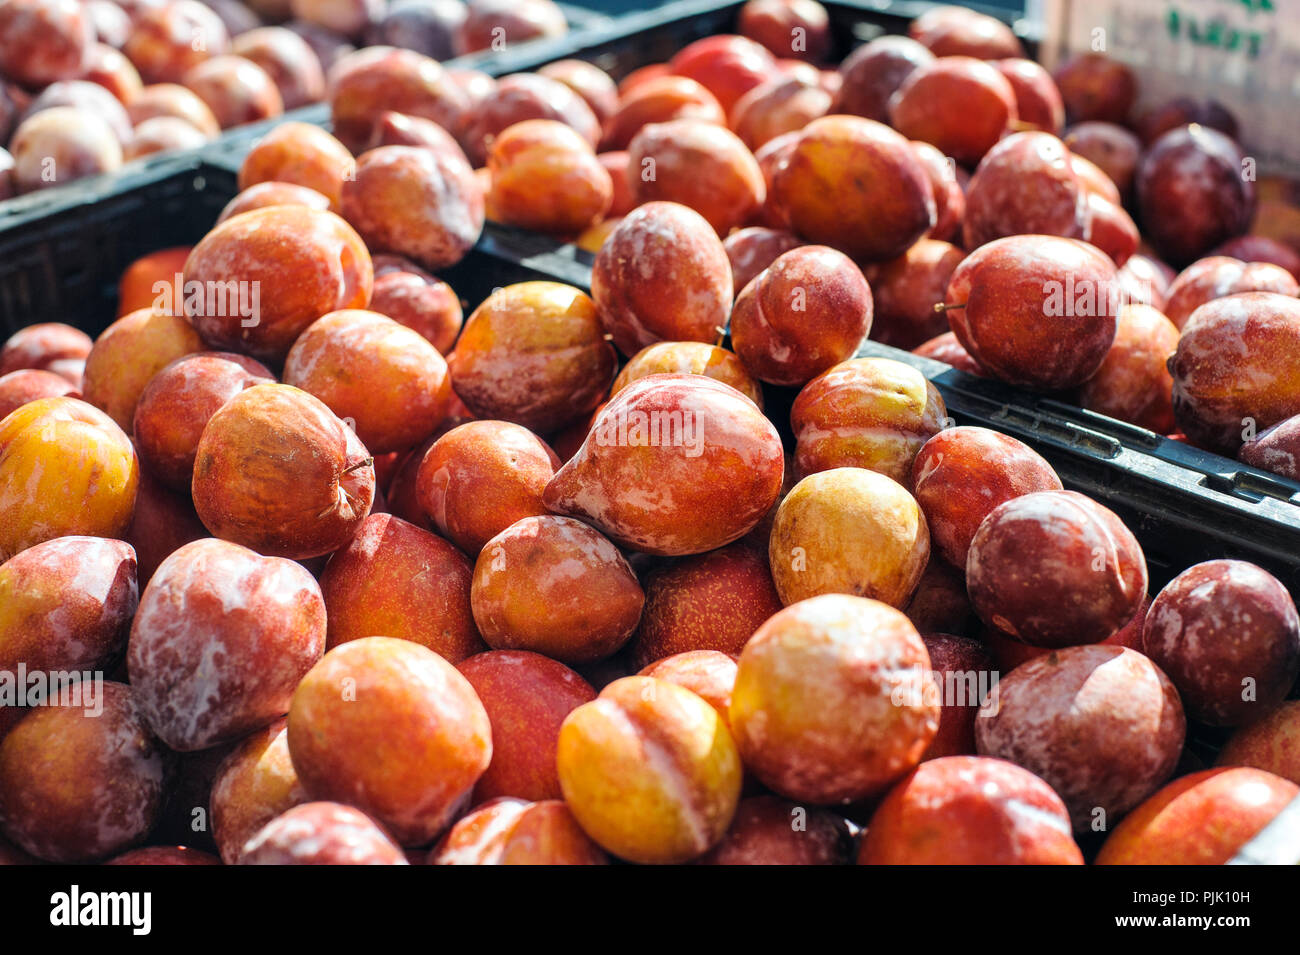 Mercato degli Agricoltori in stallo con scatole piene di amigo pluot frutti Foto Stock